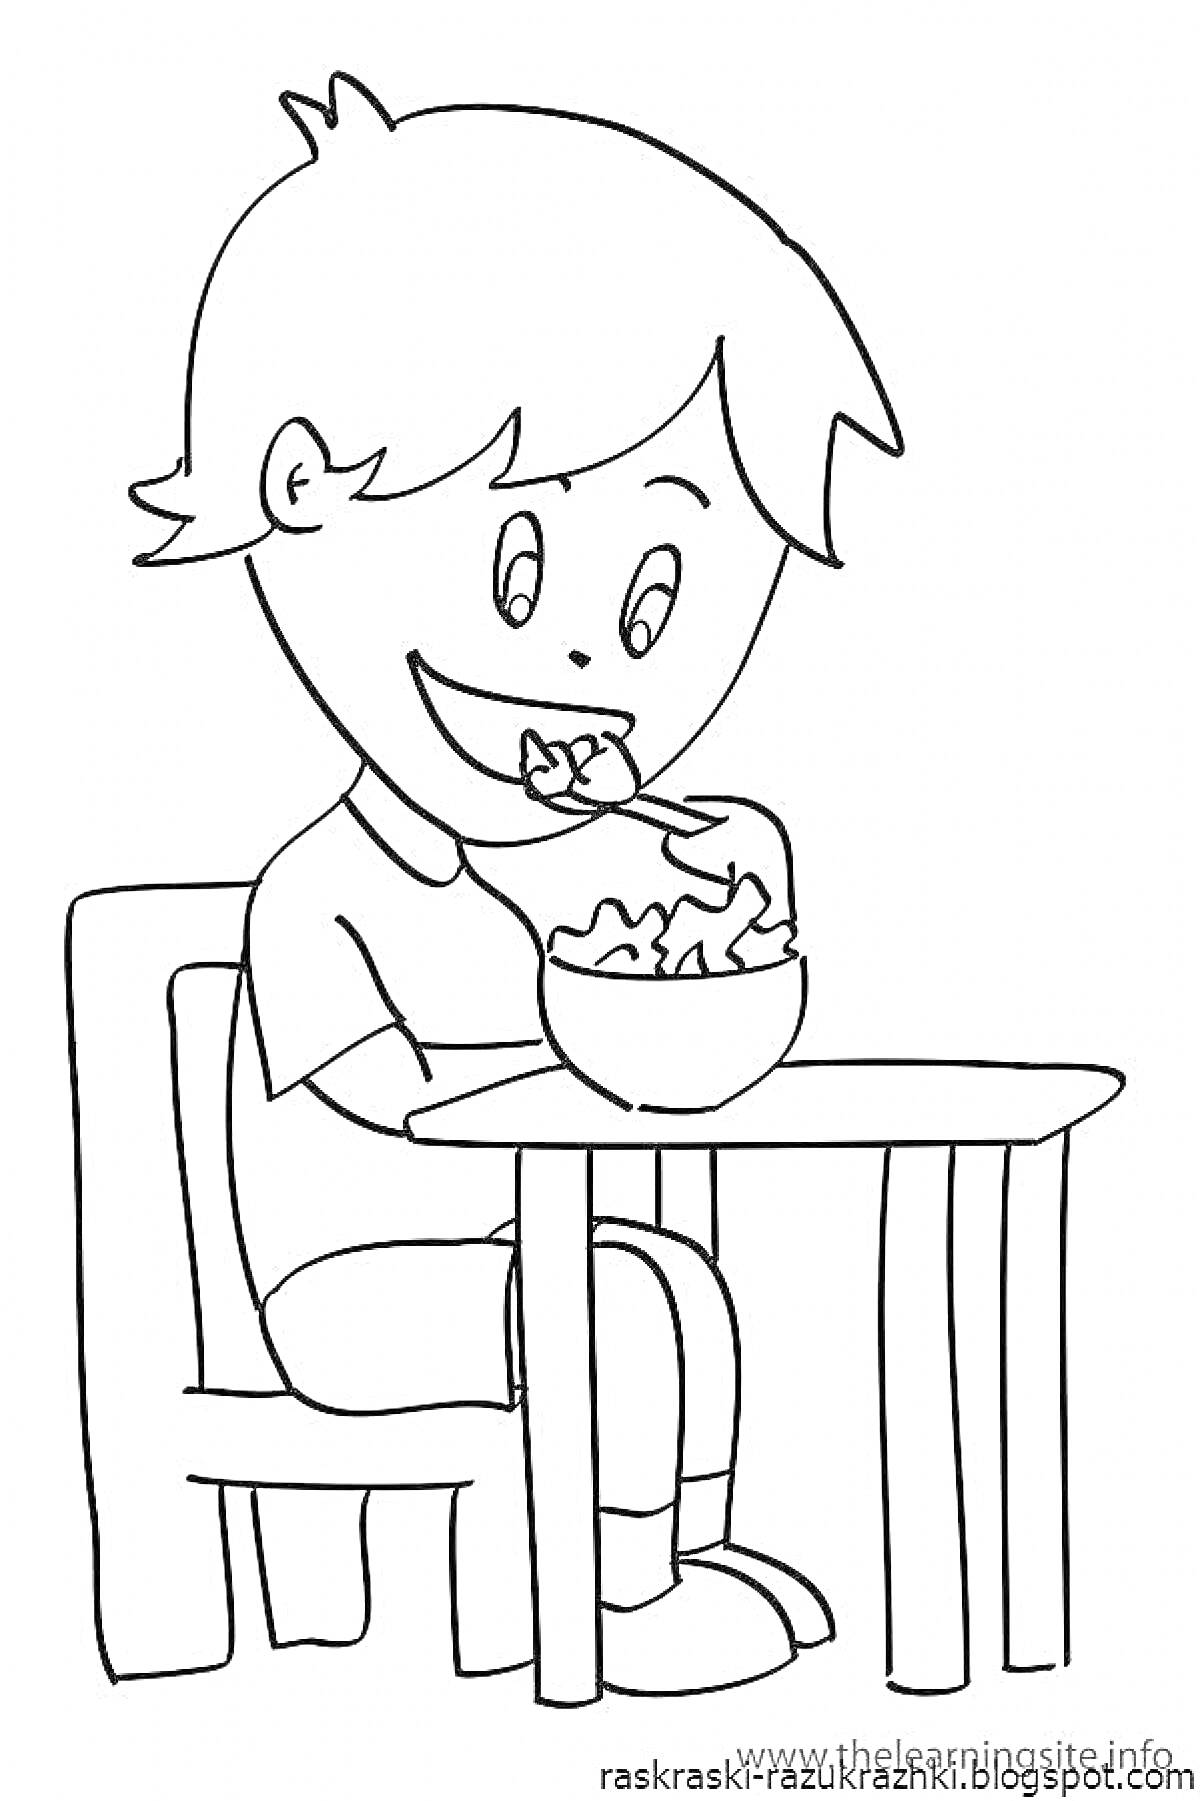 ребенок ест хлопья за столом